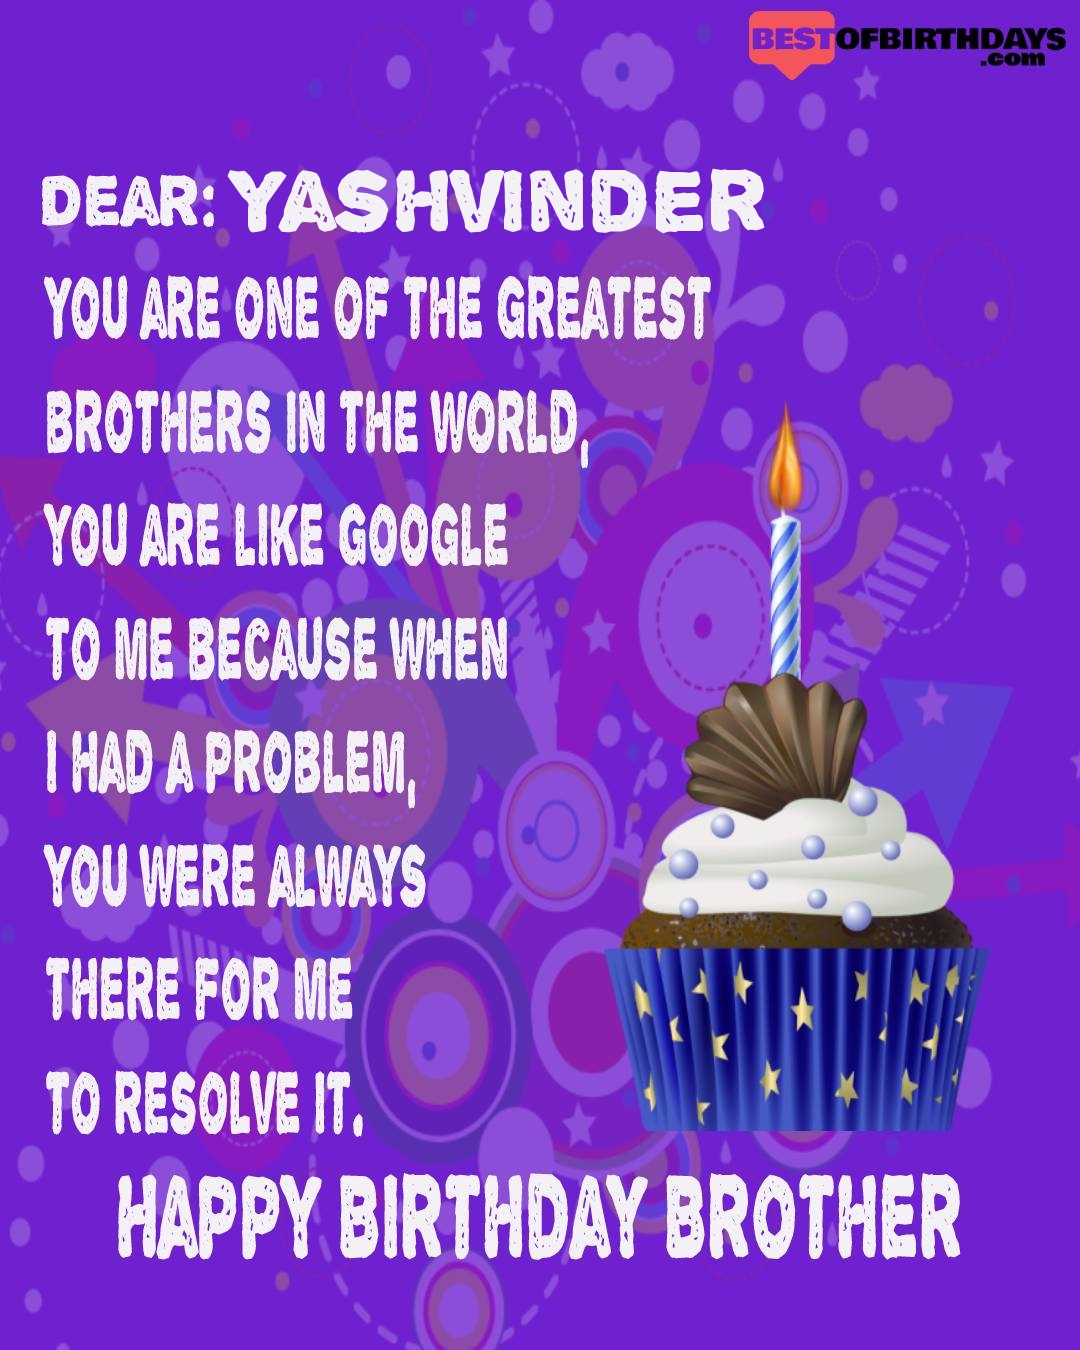 Happy birthday yashvinder bhai brother bro